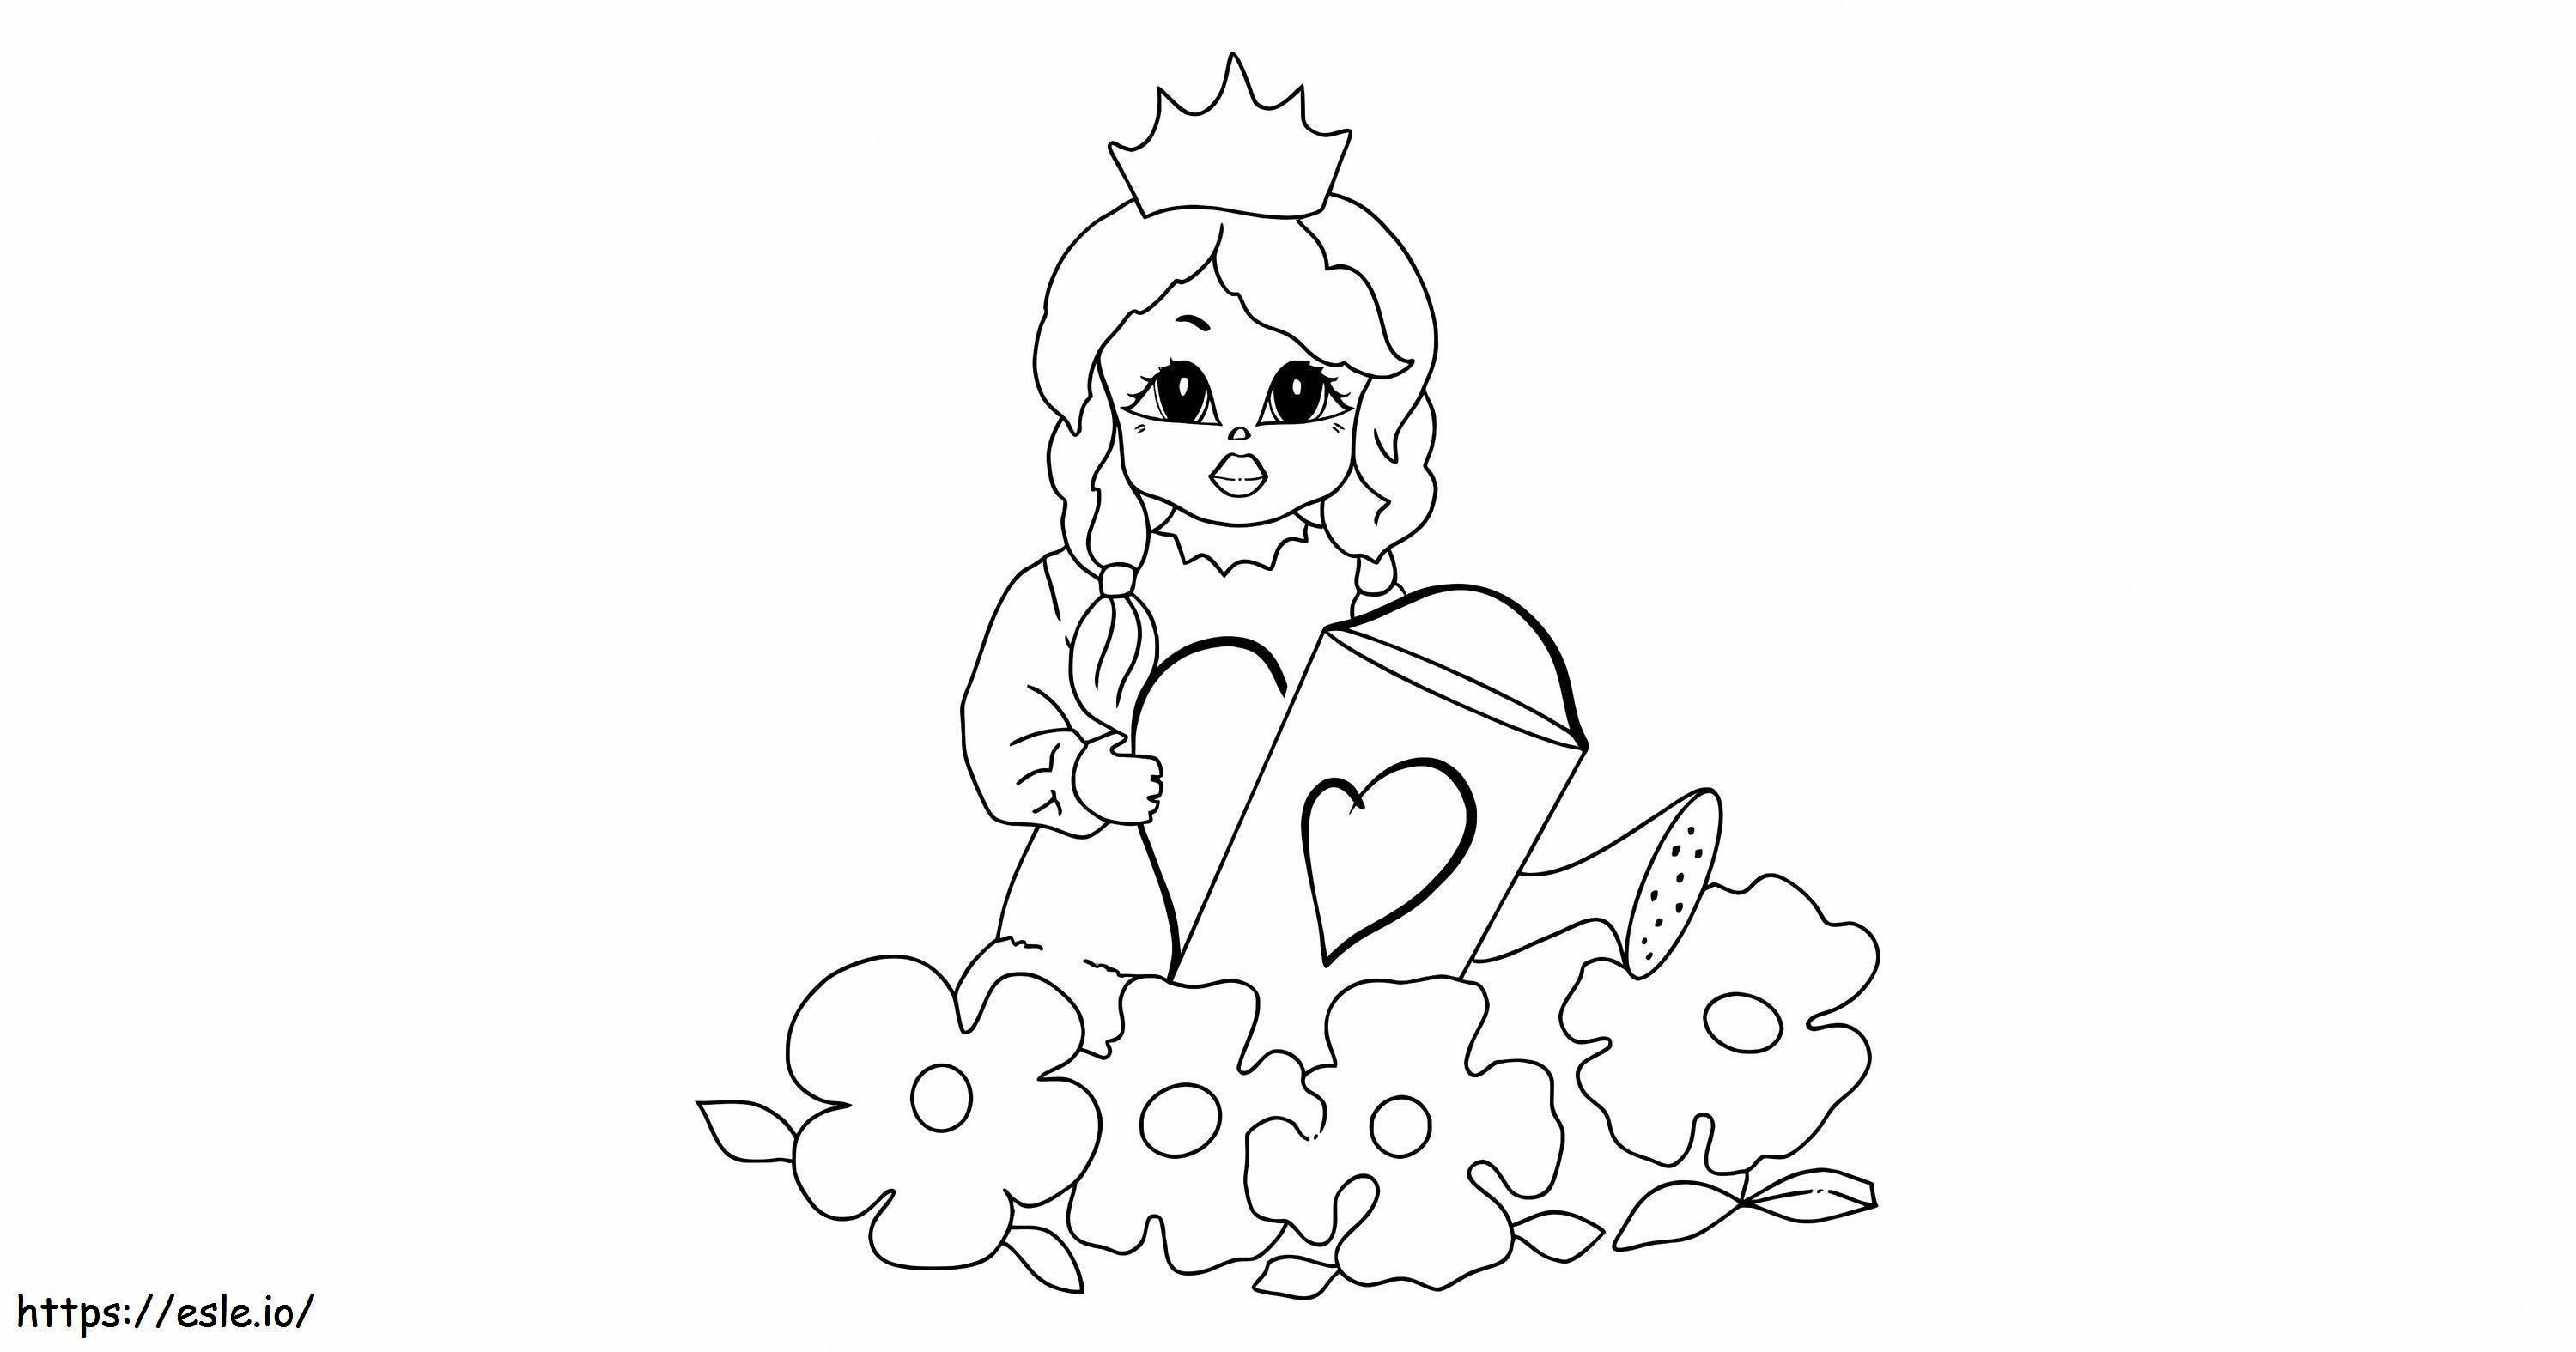 Dibuja a la princesa Peach regando las plantas. para colorear